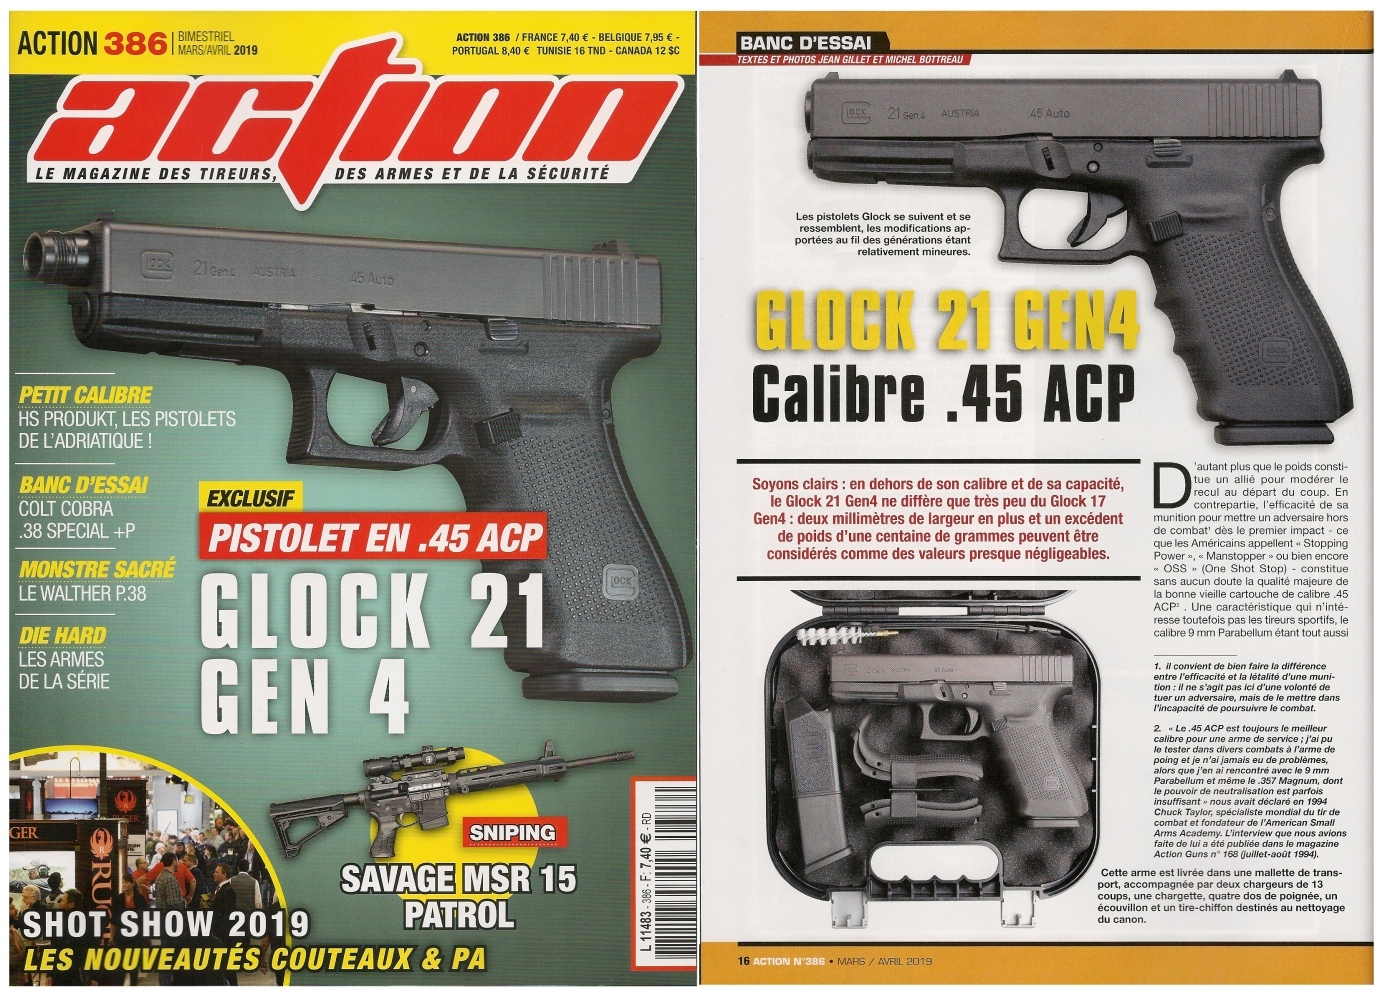 Le banc d’essai du pistolet Glock 21 Gen4 a été publié sur 6 pages dans le magazine Action n°386 (mars/avril 2019).